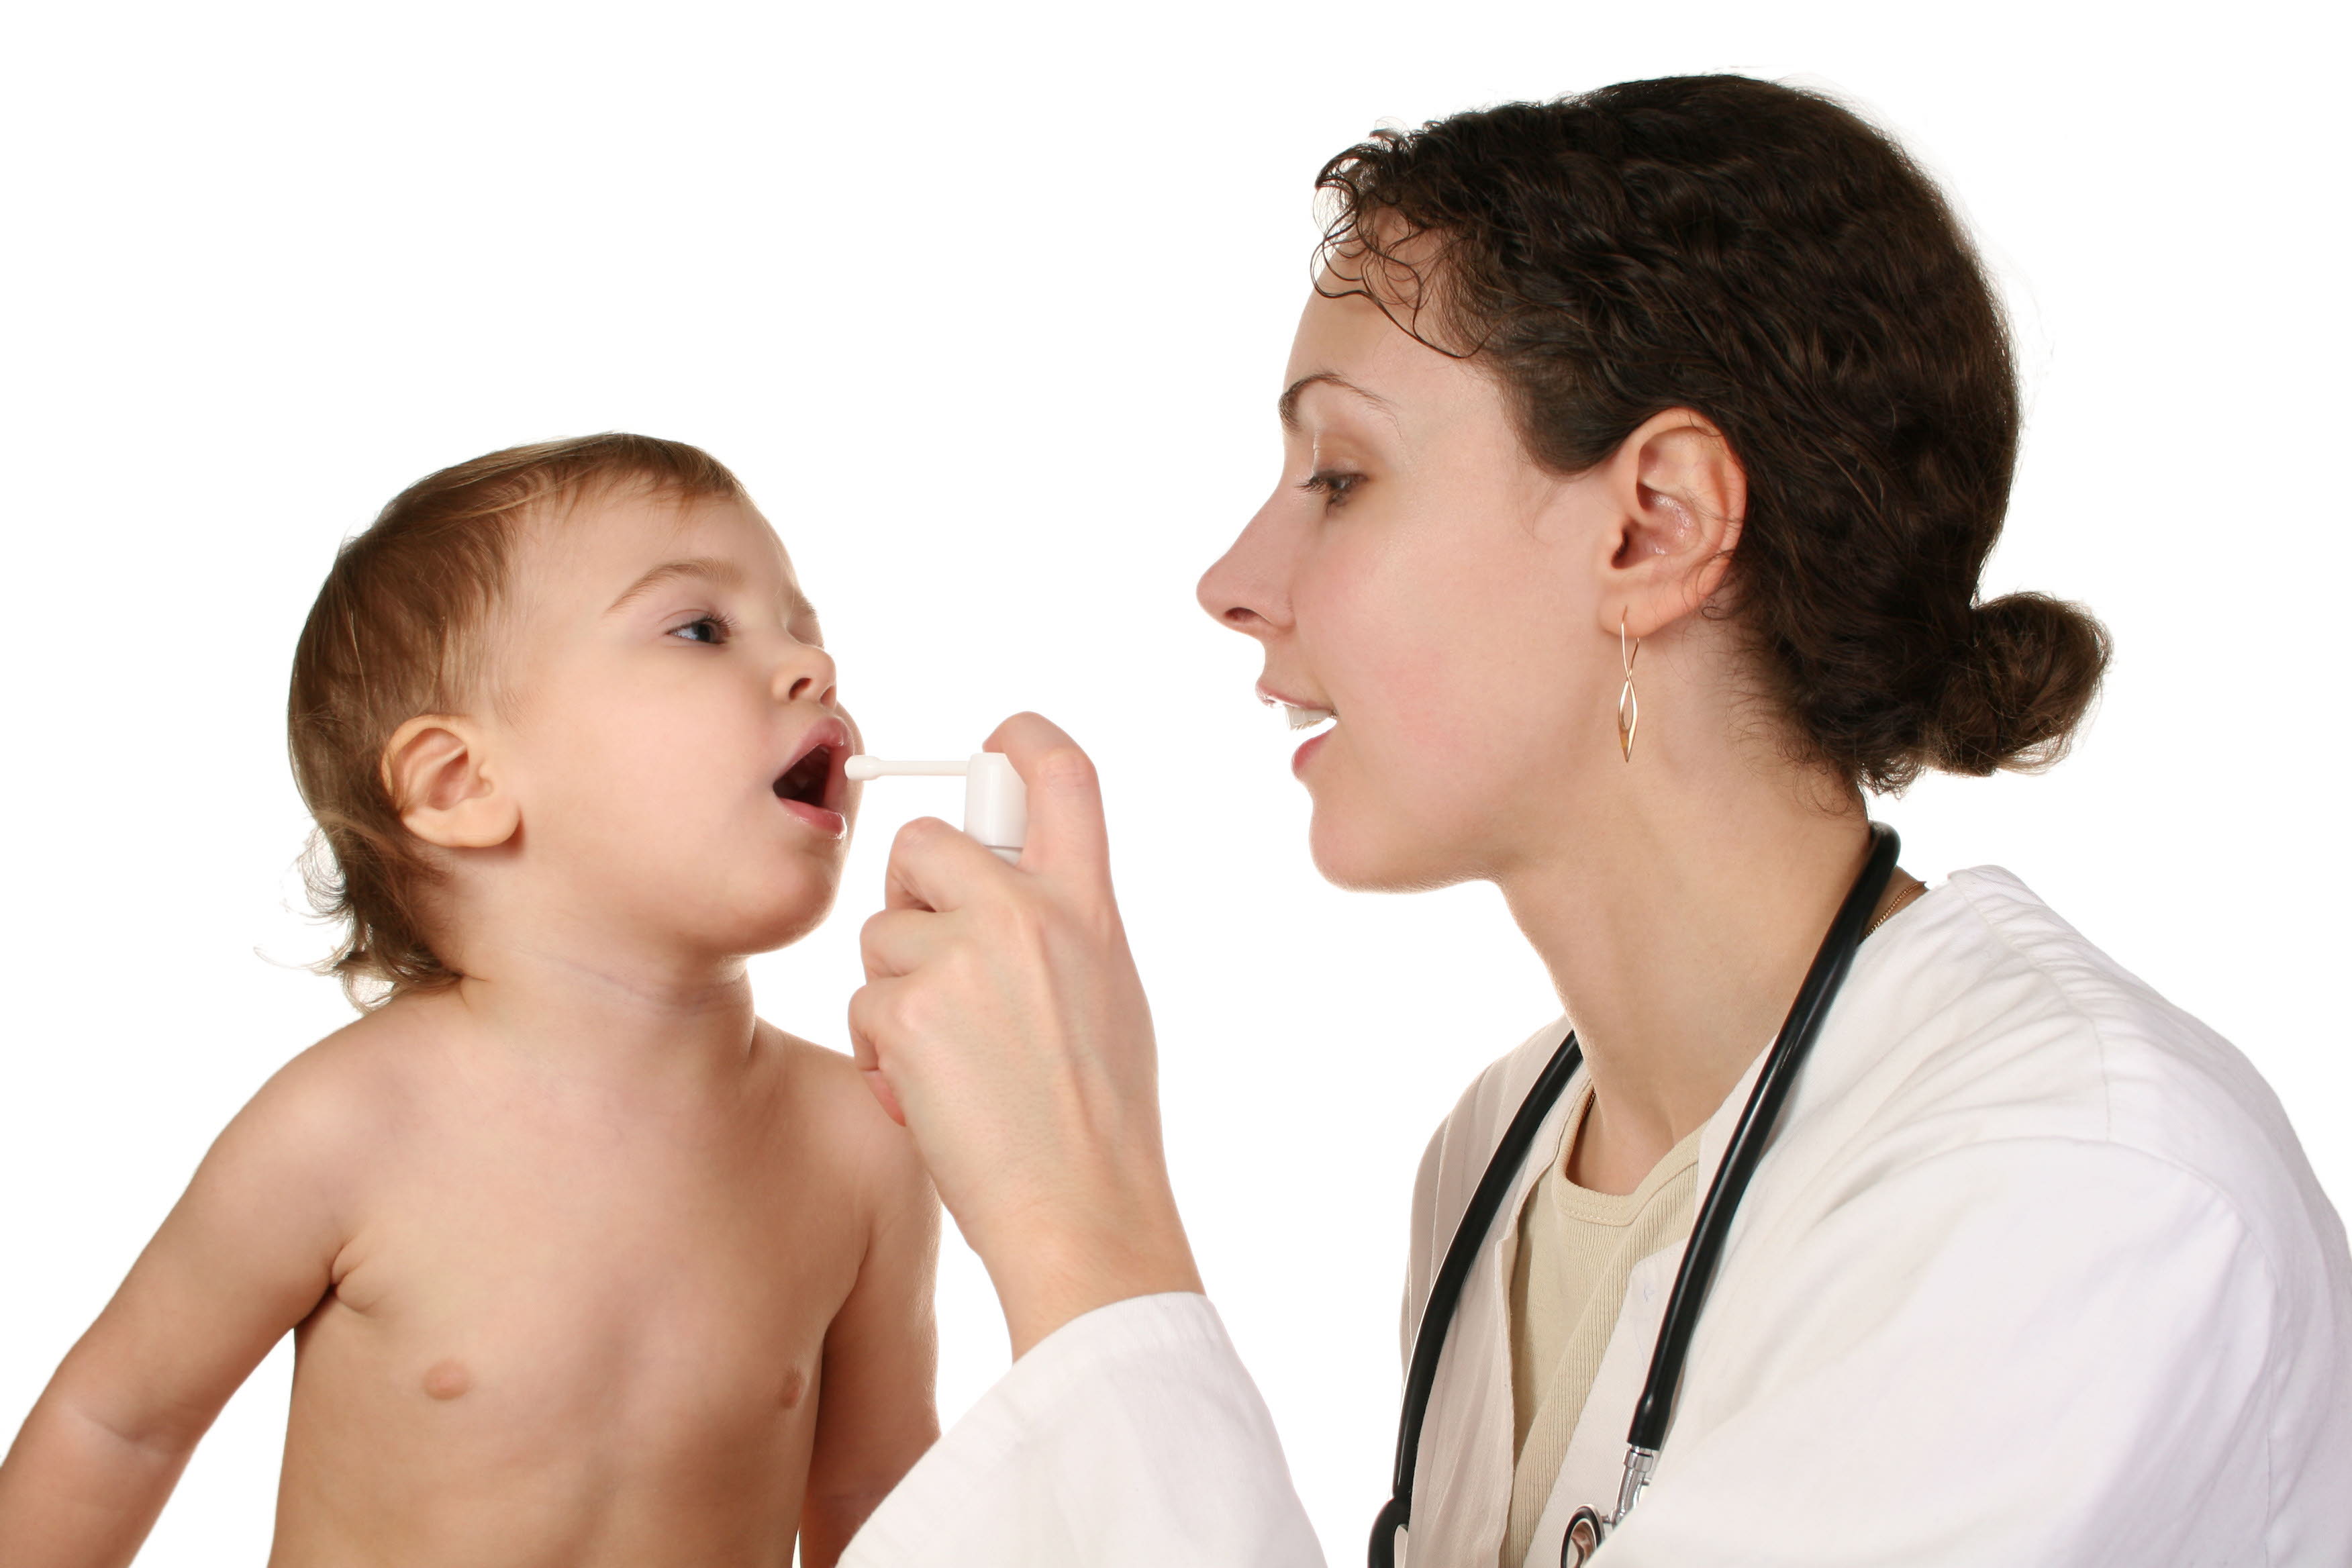 Los pediatras denuncian que el 40% de sus plazas las ocupan médicos sin la especialidad